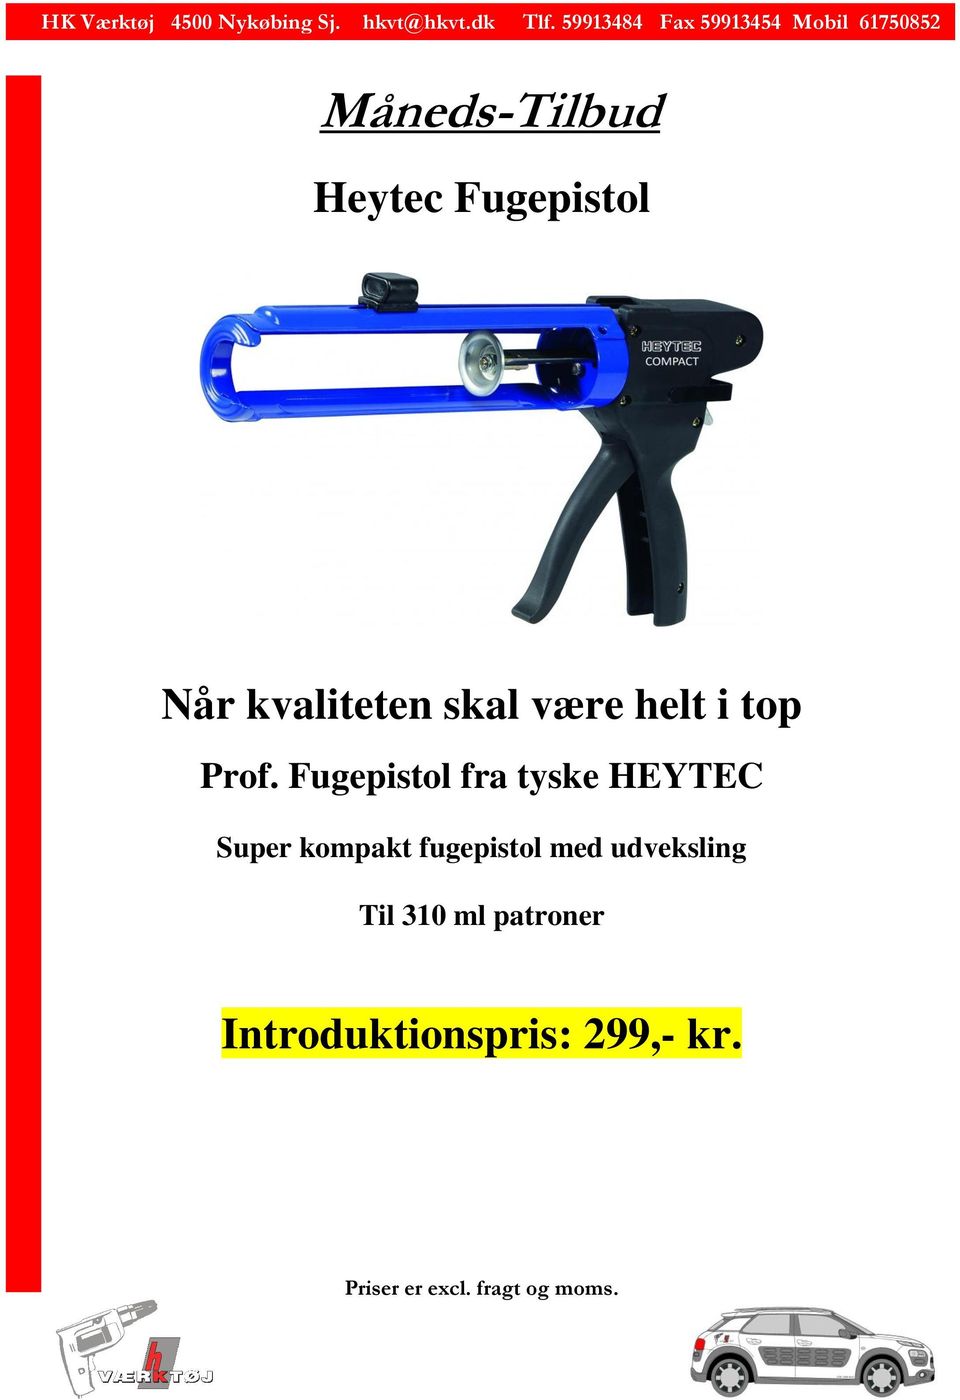 Fugepistol fra tyske HEYTEC Super kompakt